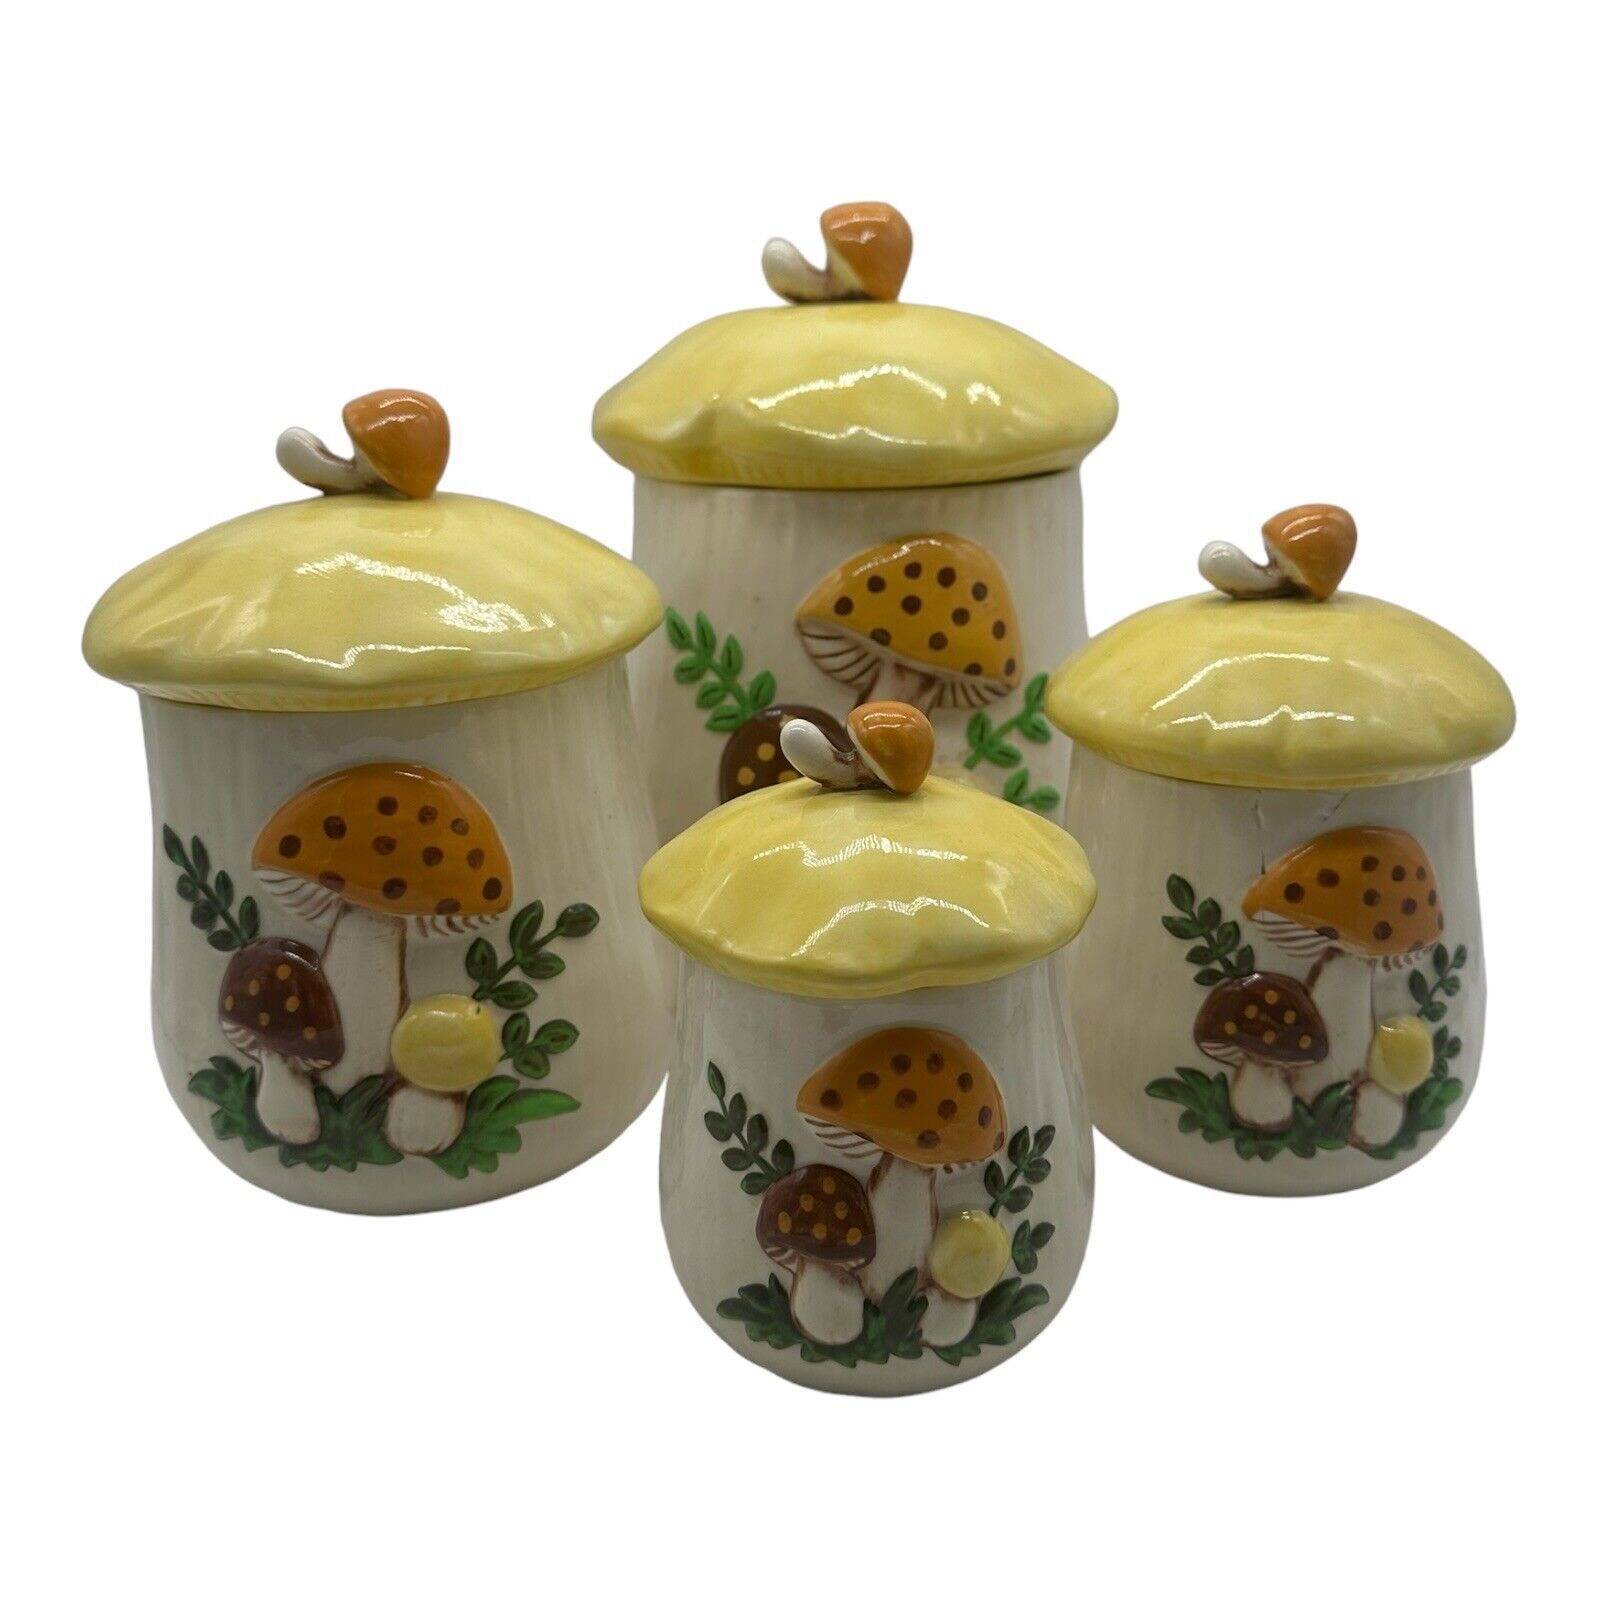 Vintage Arnel's Handmade Hand Painted Ceramic Mushroom Jar Canister Set Of 4